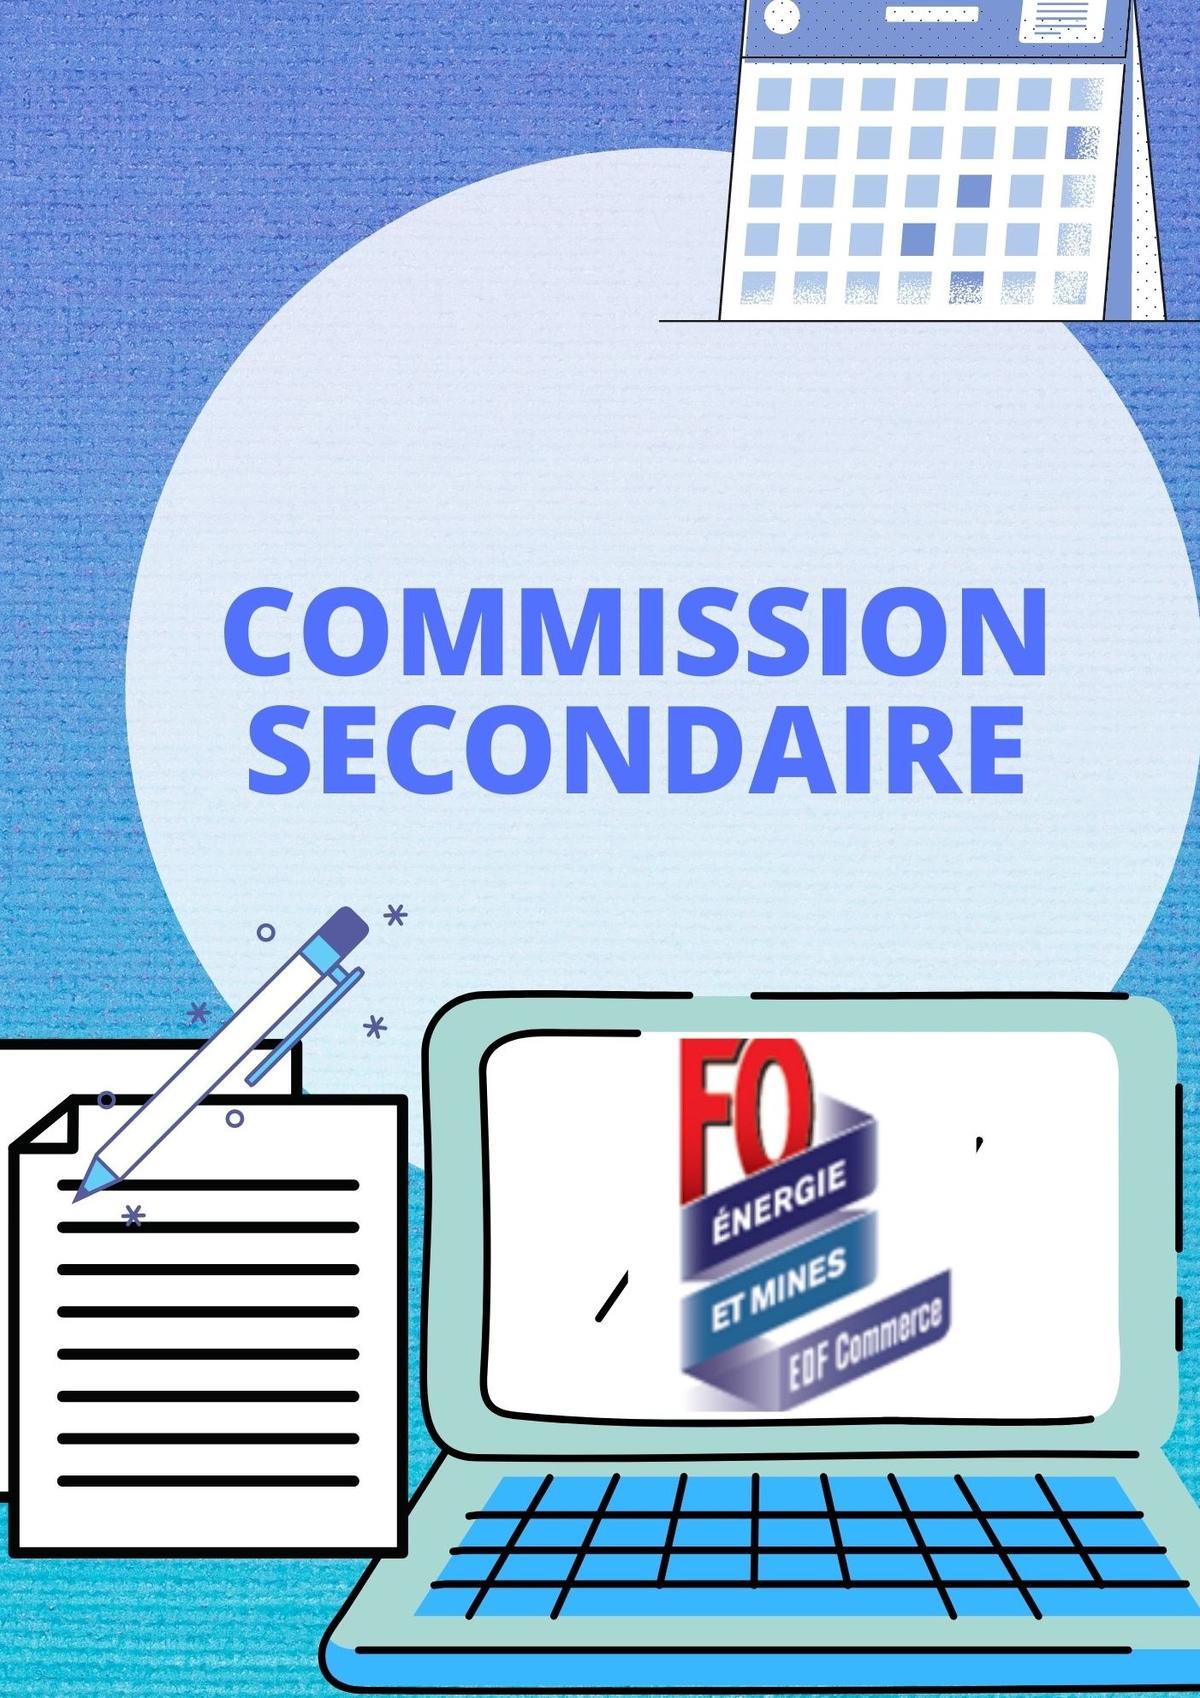 EN DIRECT DE LA COMMISSION SECONDAIRE DU 1er DECEMBRE 2020